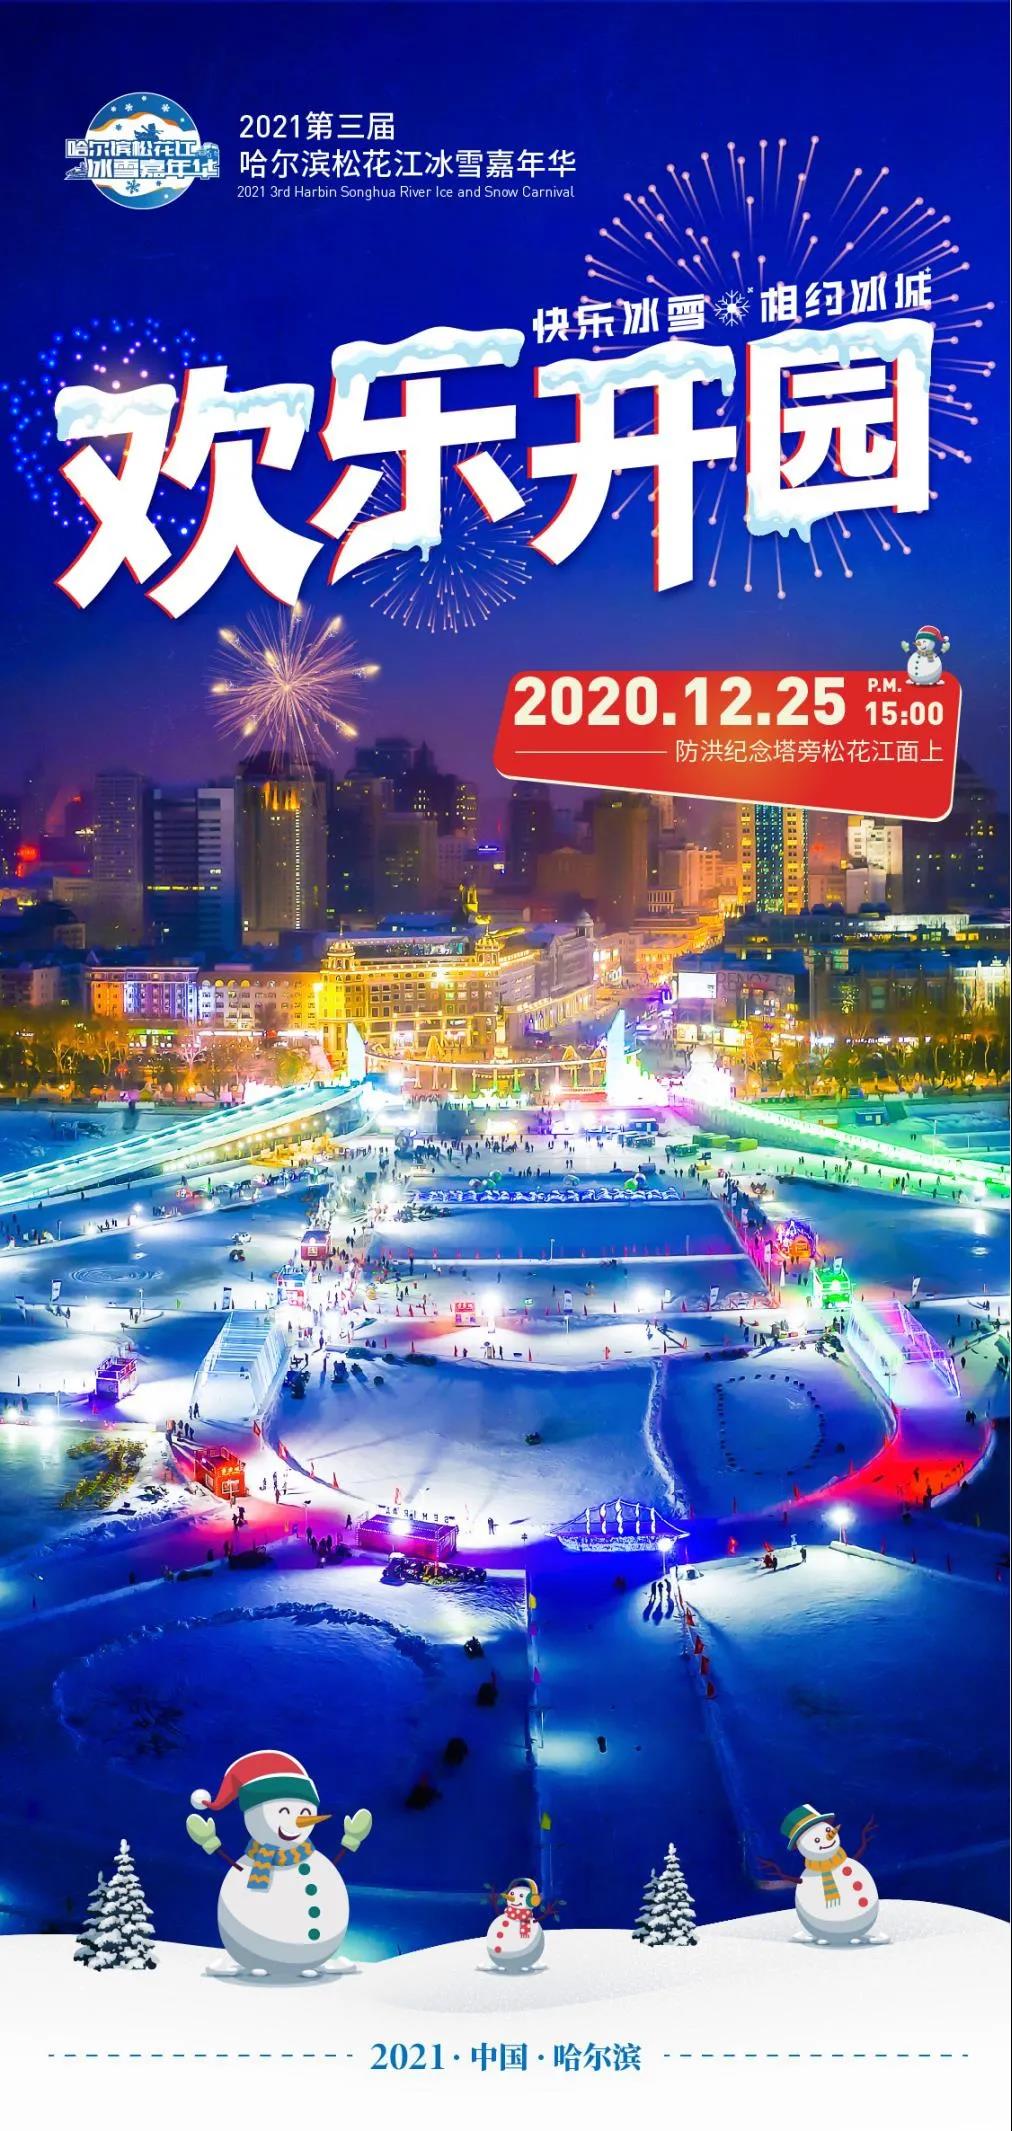 第三届哈尔滨松花江冰雪嘉年华将于12月25日欢乐开园